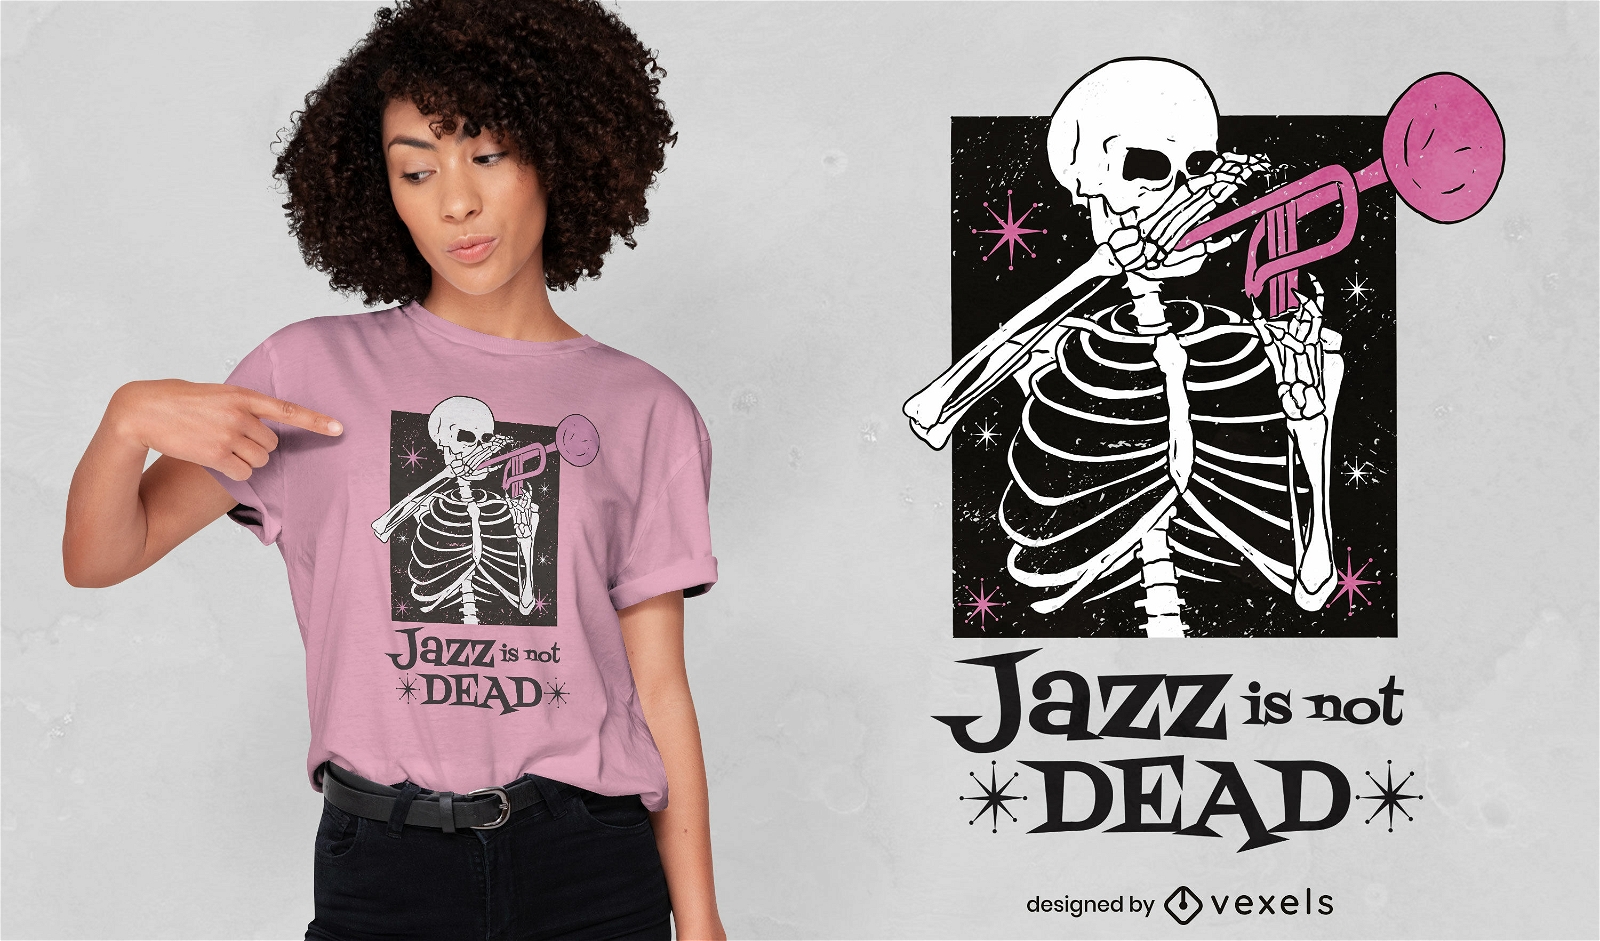 Jazz is not dead t-shirt design